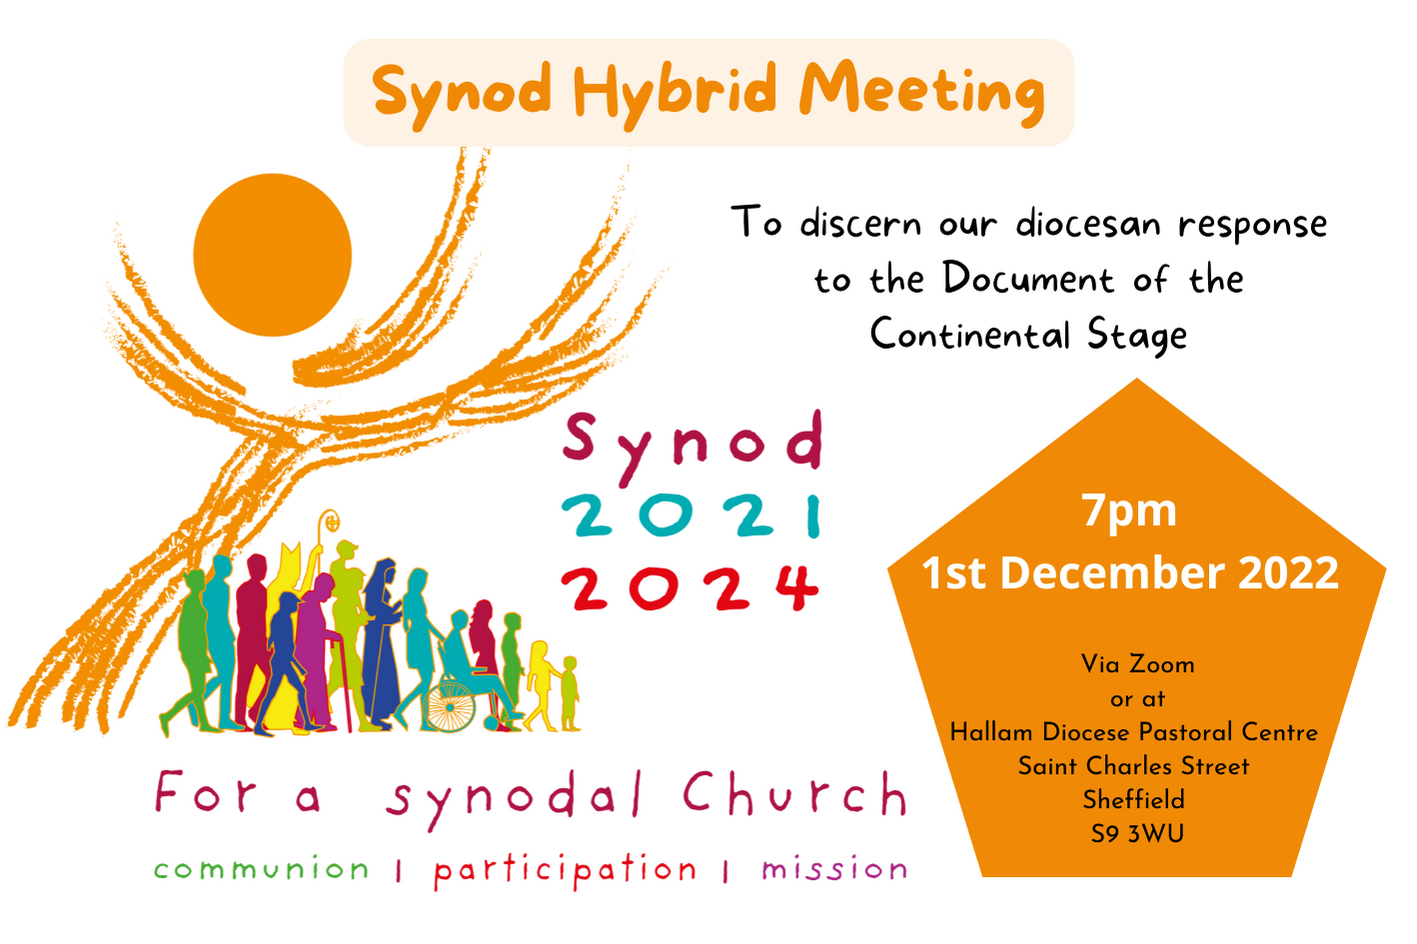 Synod Hybrid Meeting 1st December 2022